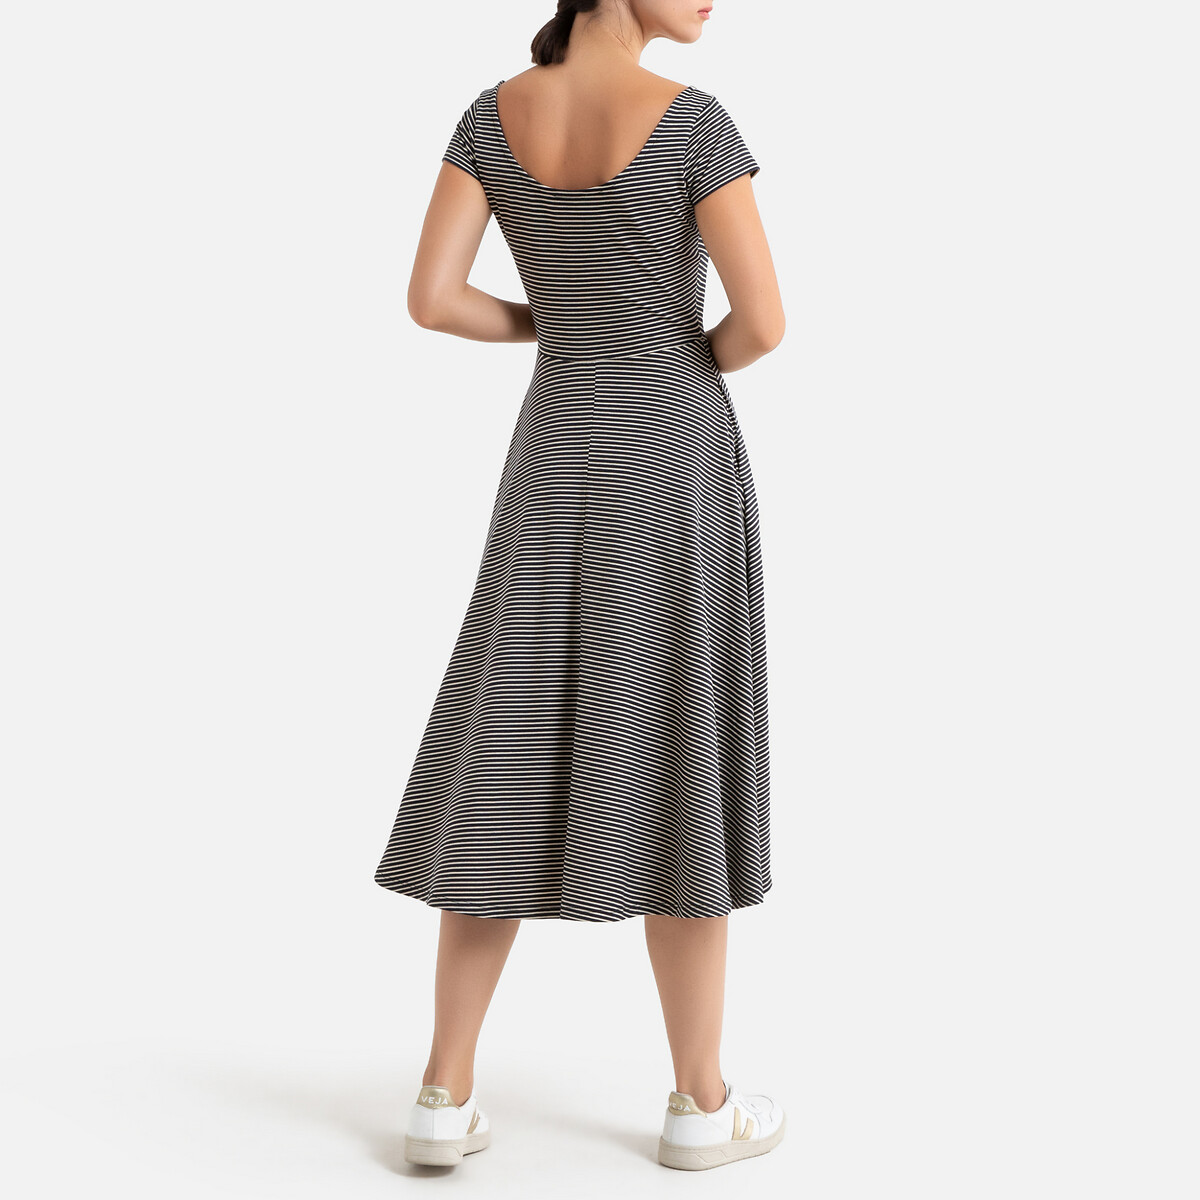 Платье La Redoute Длинное расклешенное в полоску с короткими рукавами L бежевый, размер L - фото 3